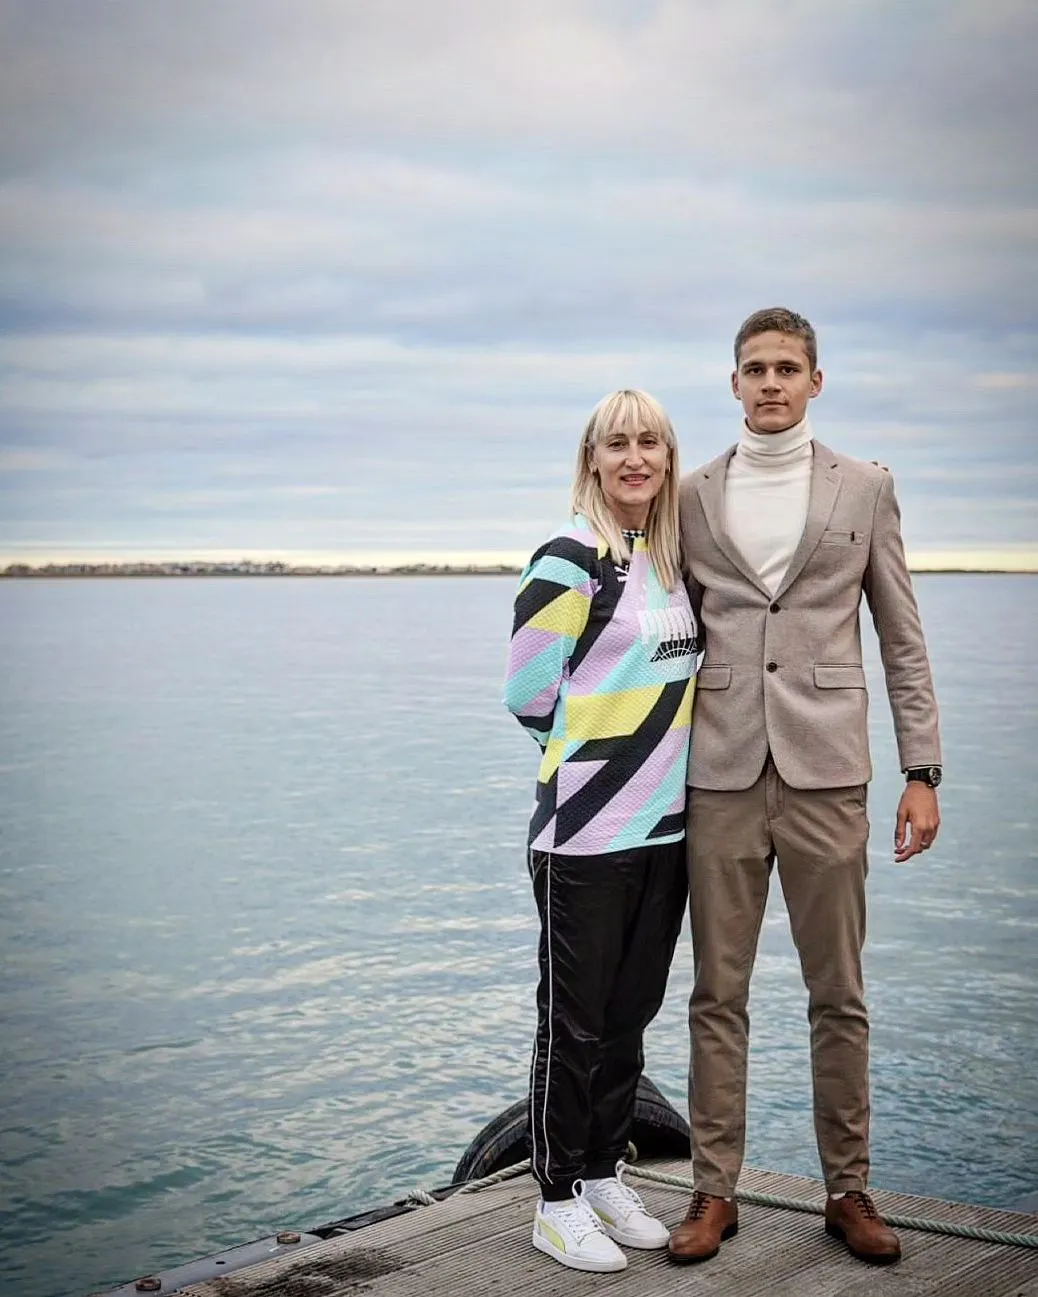 Магучих встречается с сыном своей тренерши. Как выглядит избранник красивейшей легкоатлетки Украины